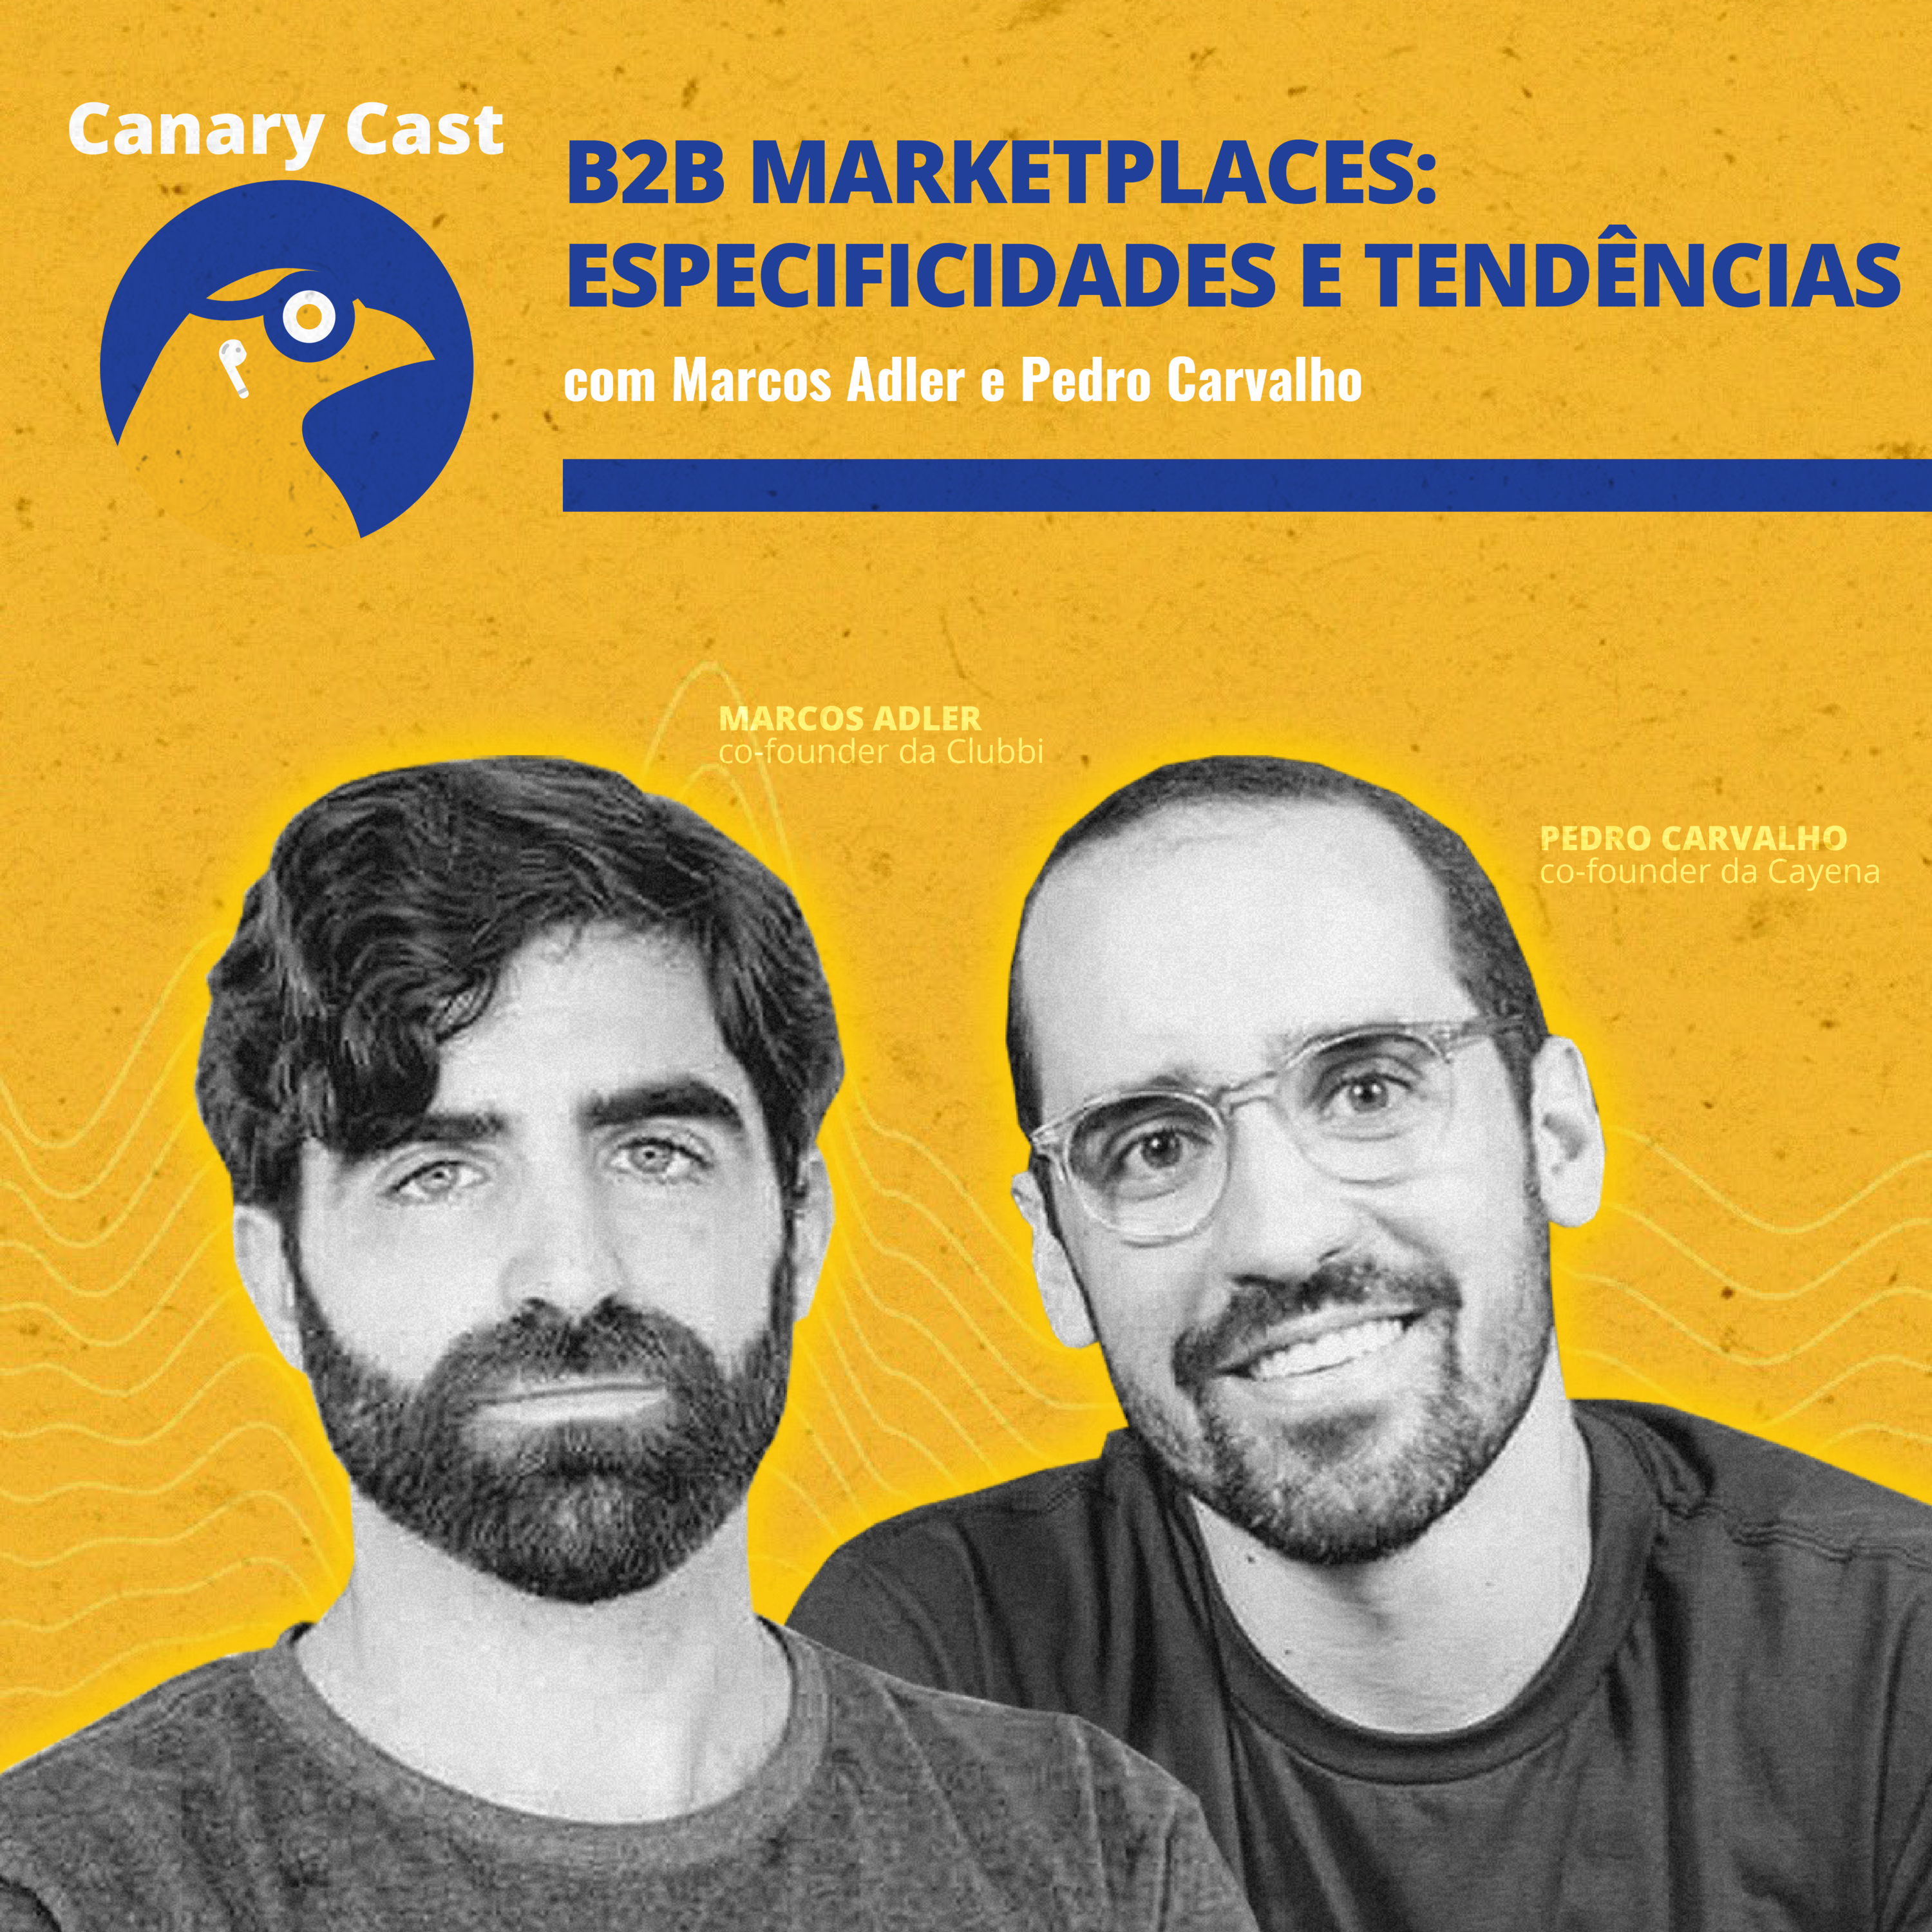 B2B marketplaces: especificidades e tendências, com Marcos Adler e Pedro Carvalho